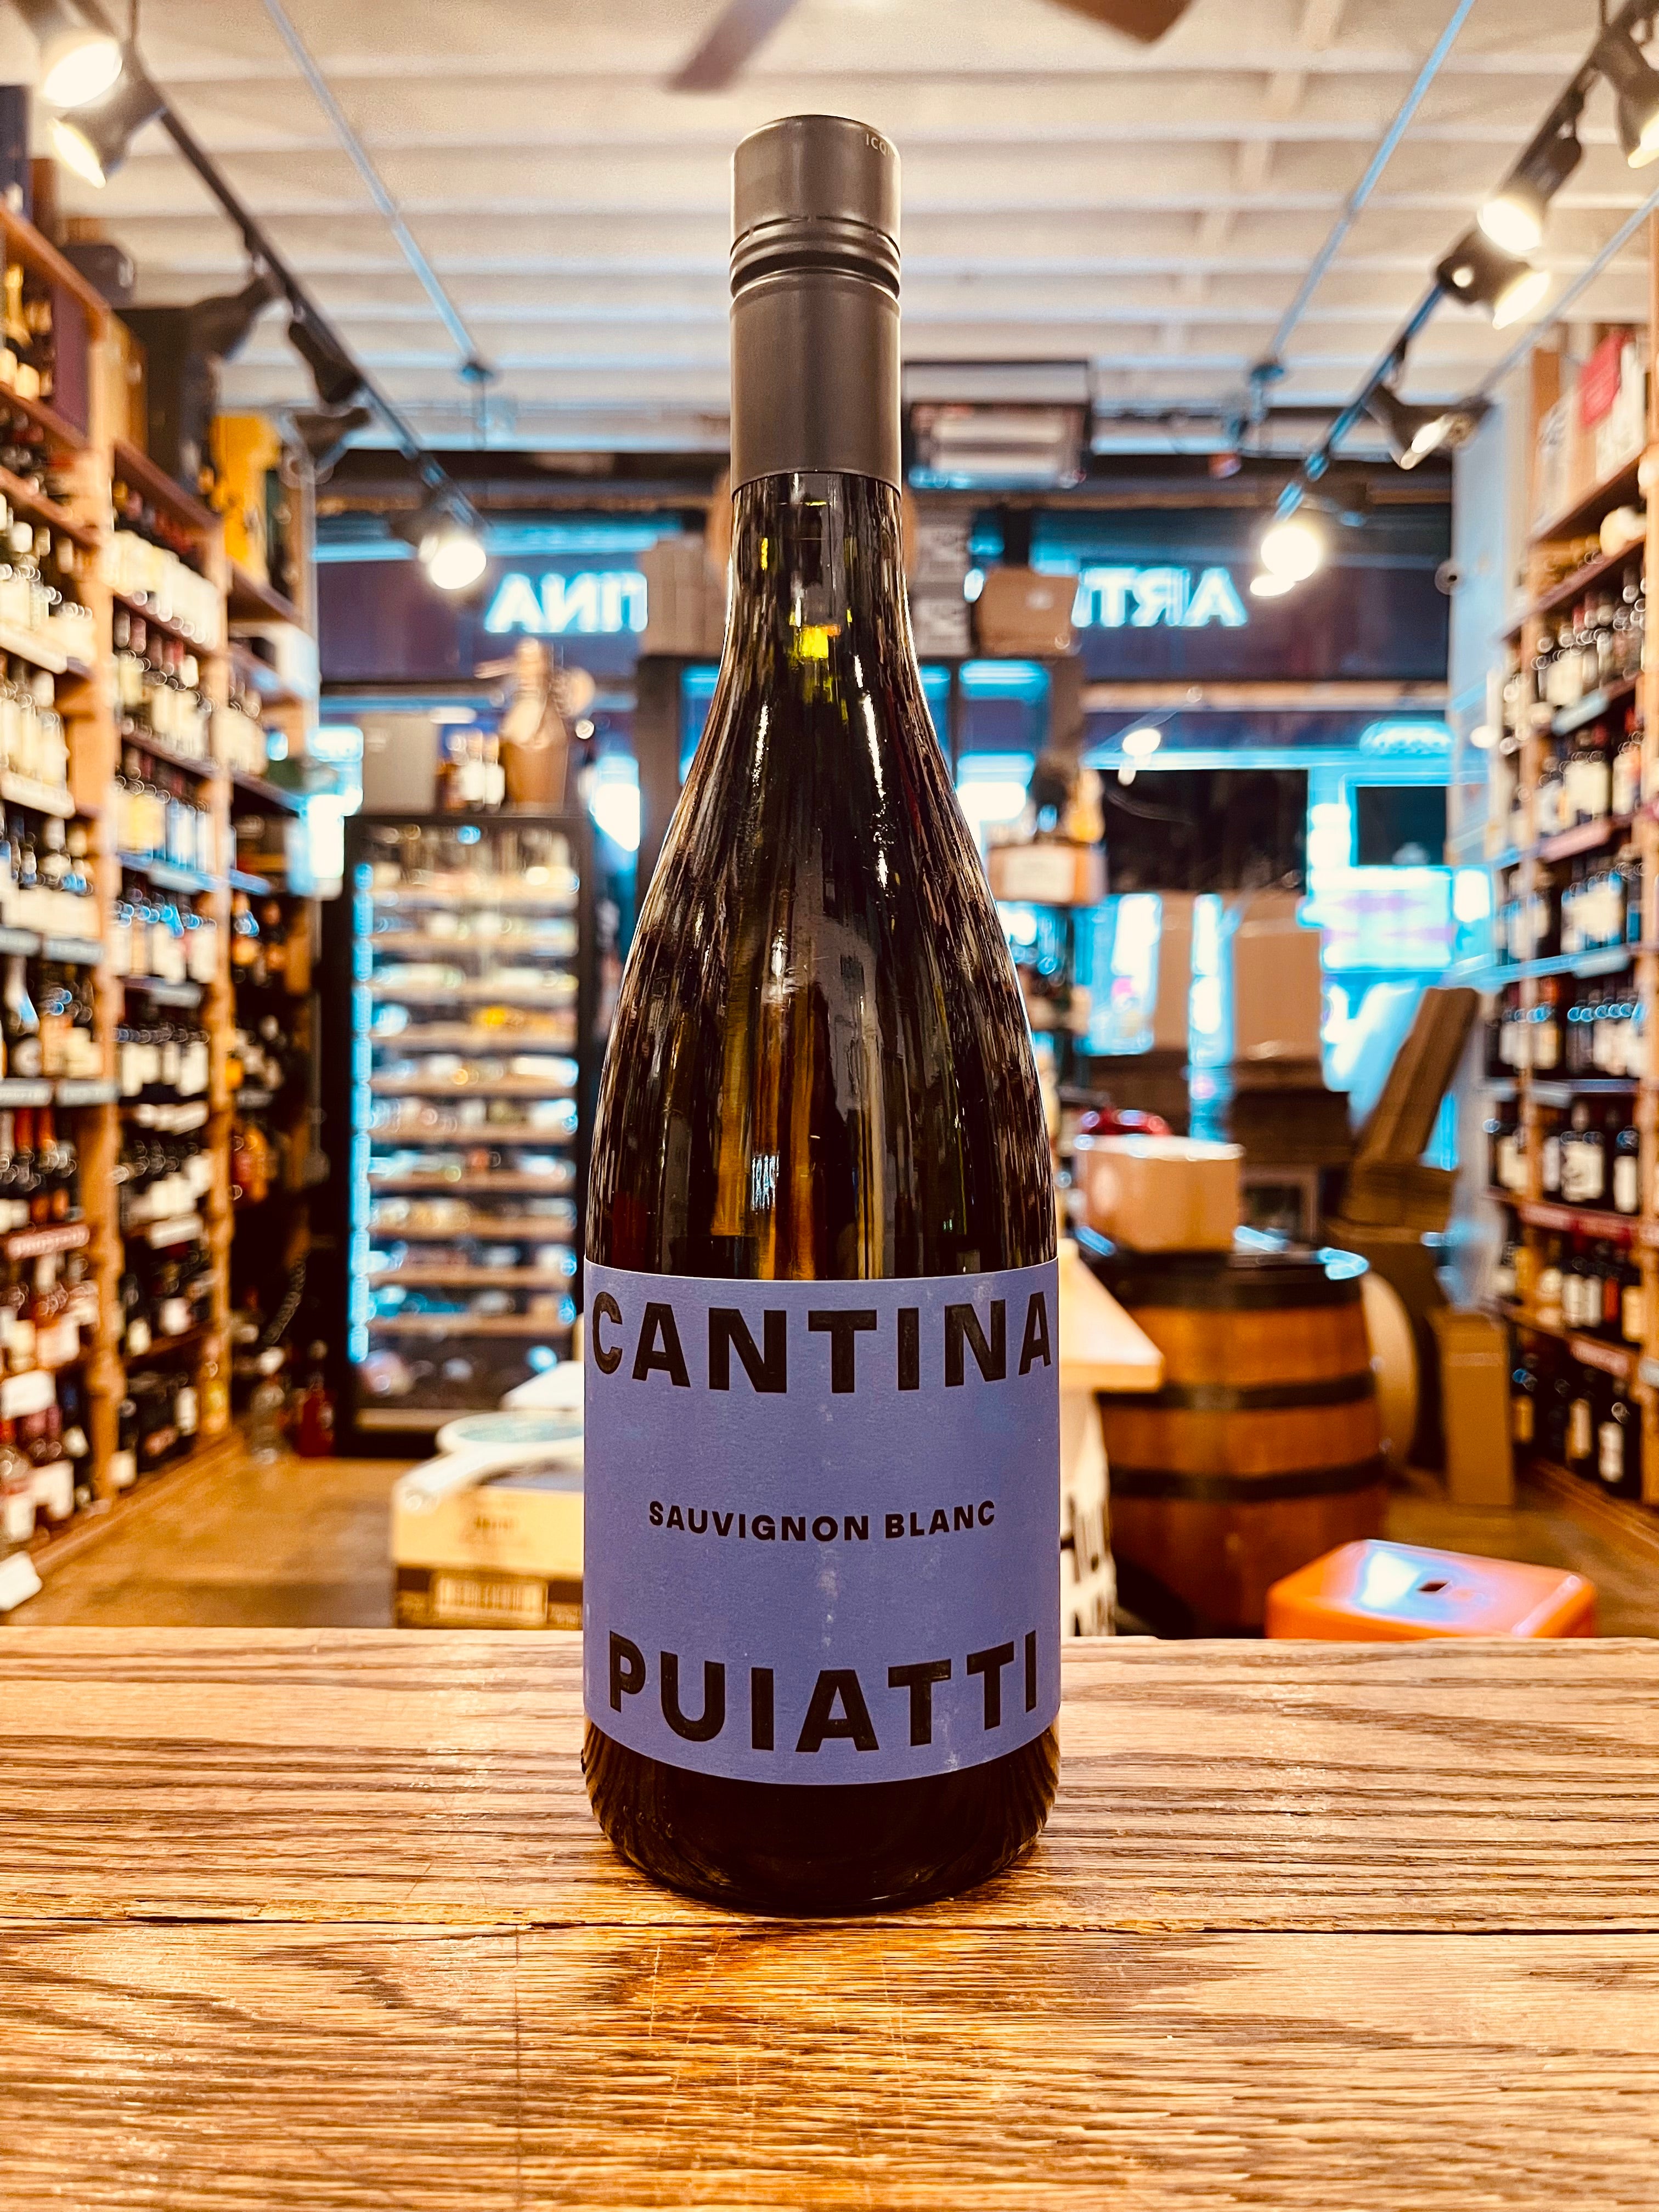 Cantina Puiatti Sauvignon Blanc 750mL Friuli a wide bottom dark wine bottle with a blue label and a black top